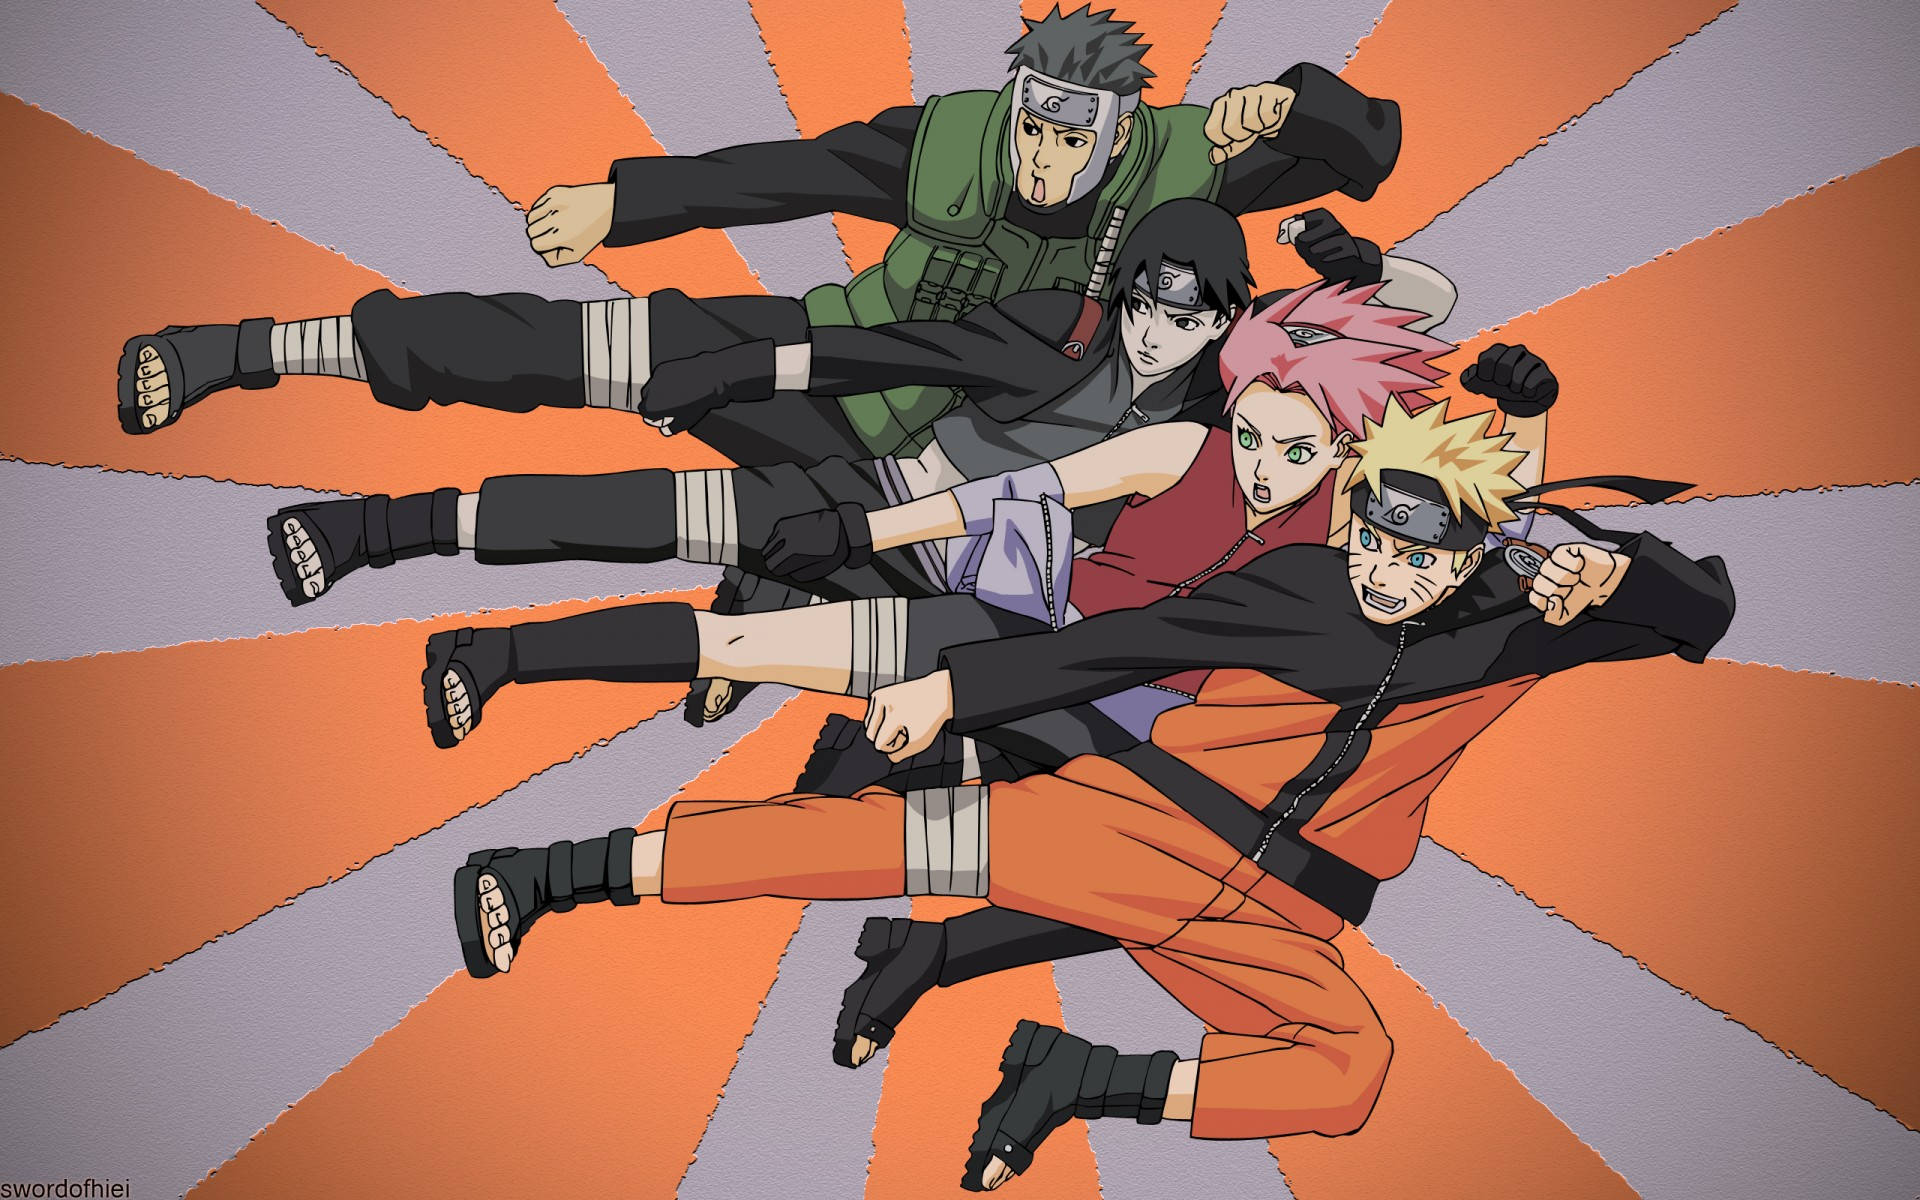 Tận hưởng cảm giác của đội Naruto Team 7 hoàn toàn miễn phí với chất lượng và độ phân giải tuyệt vời. Hình nền đội Naruto là một sự lựa chọn tuyệt vời cho những người yêu thích Naruto và thế giới ninja. Bạn có thể tải hình nền đội Naruto Team 7 miễn phí trên trang web chúng tôi và sở hữu nó bằng một cú nhấp chuột - thật đơn giản!